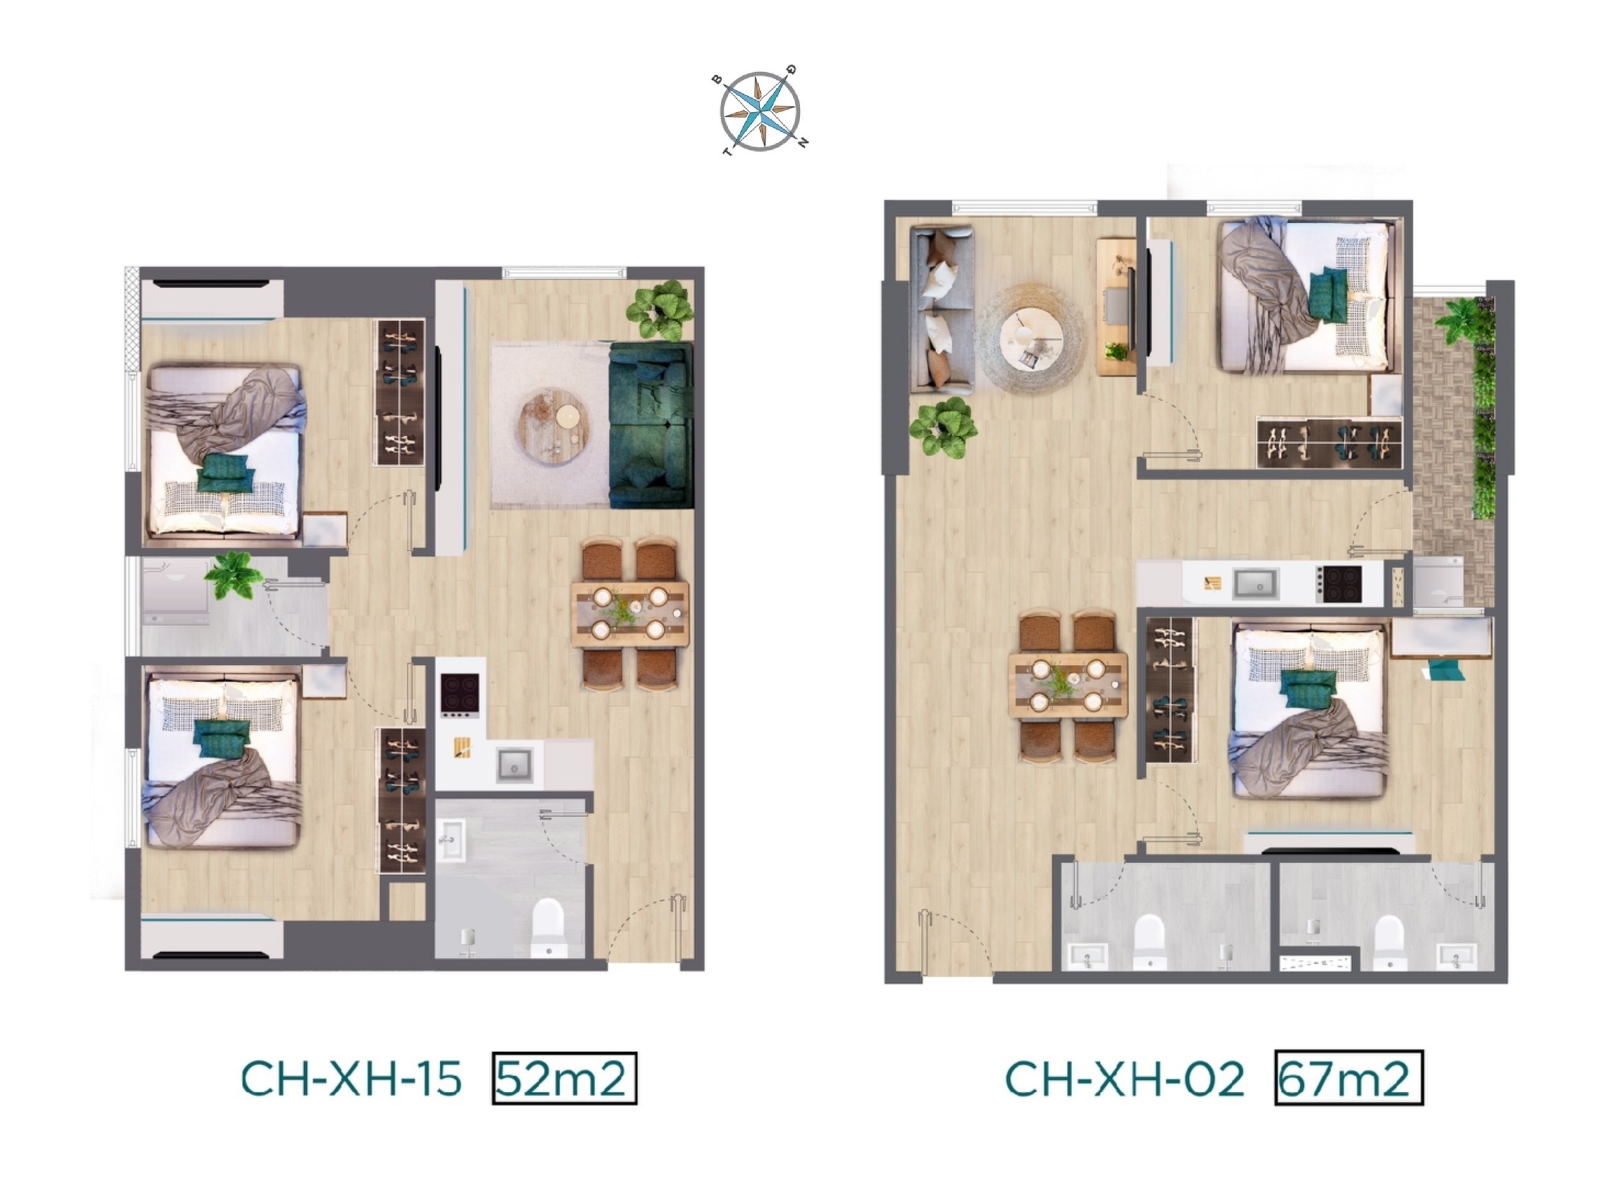 Thiết kế căn hộ hai phòng ngủ 52m2 - 67m2 chung cư Quang Vinh